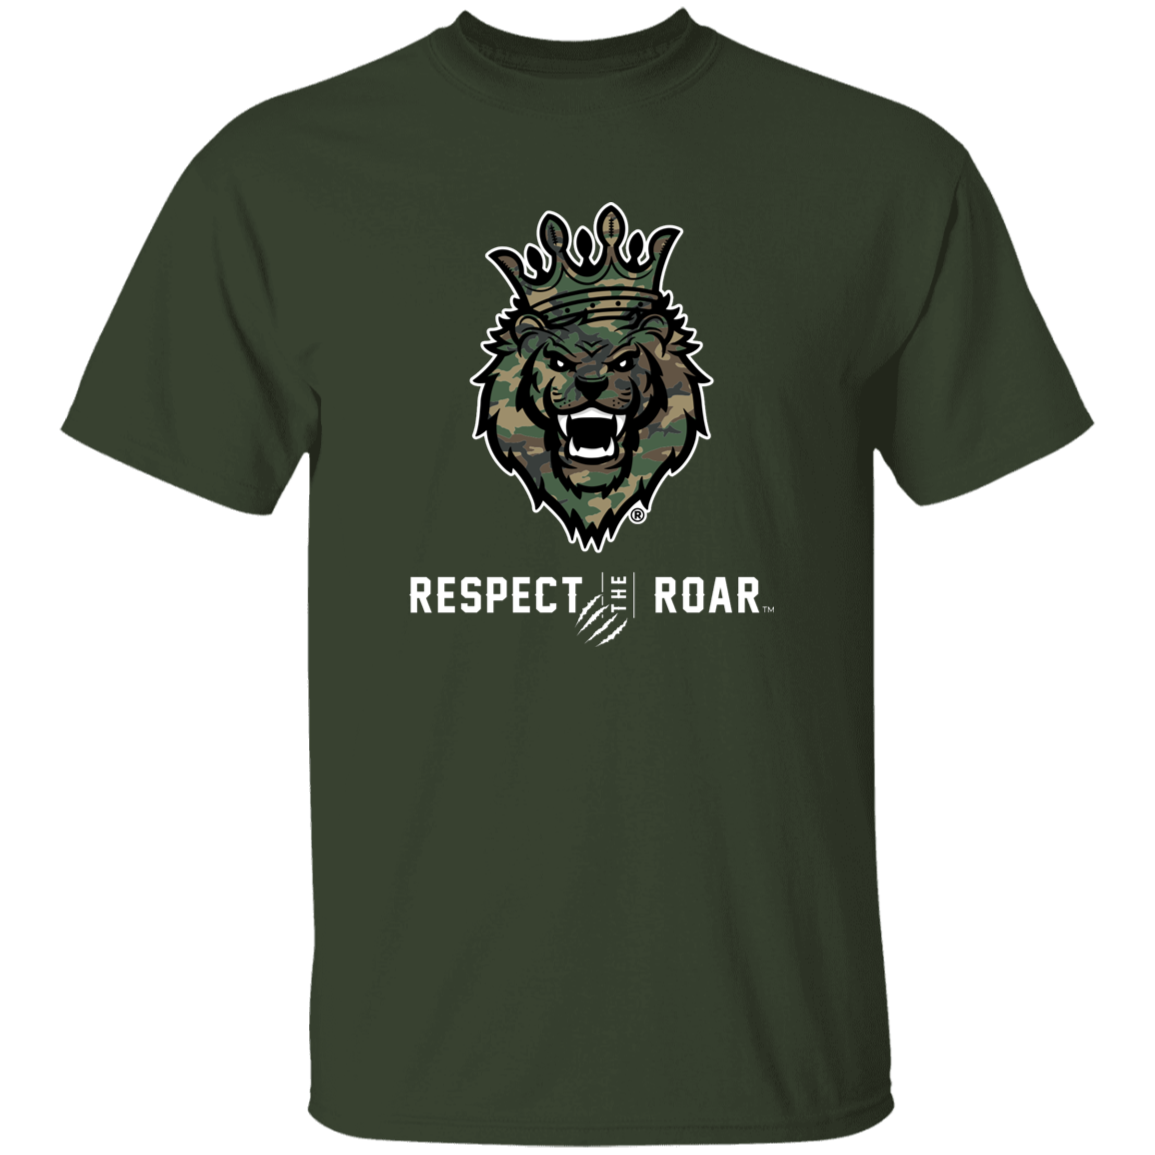 Respect The Roar (Green) - G500 5.3 oz. T-Shirt